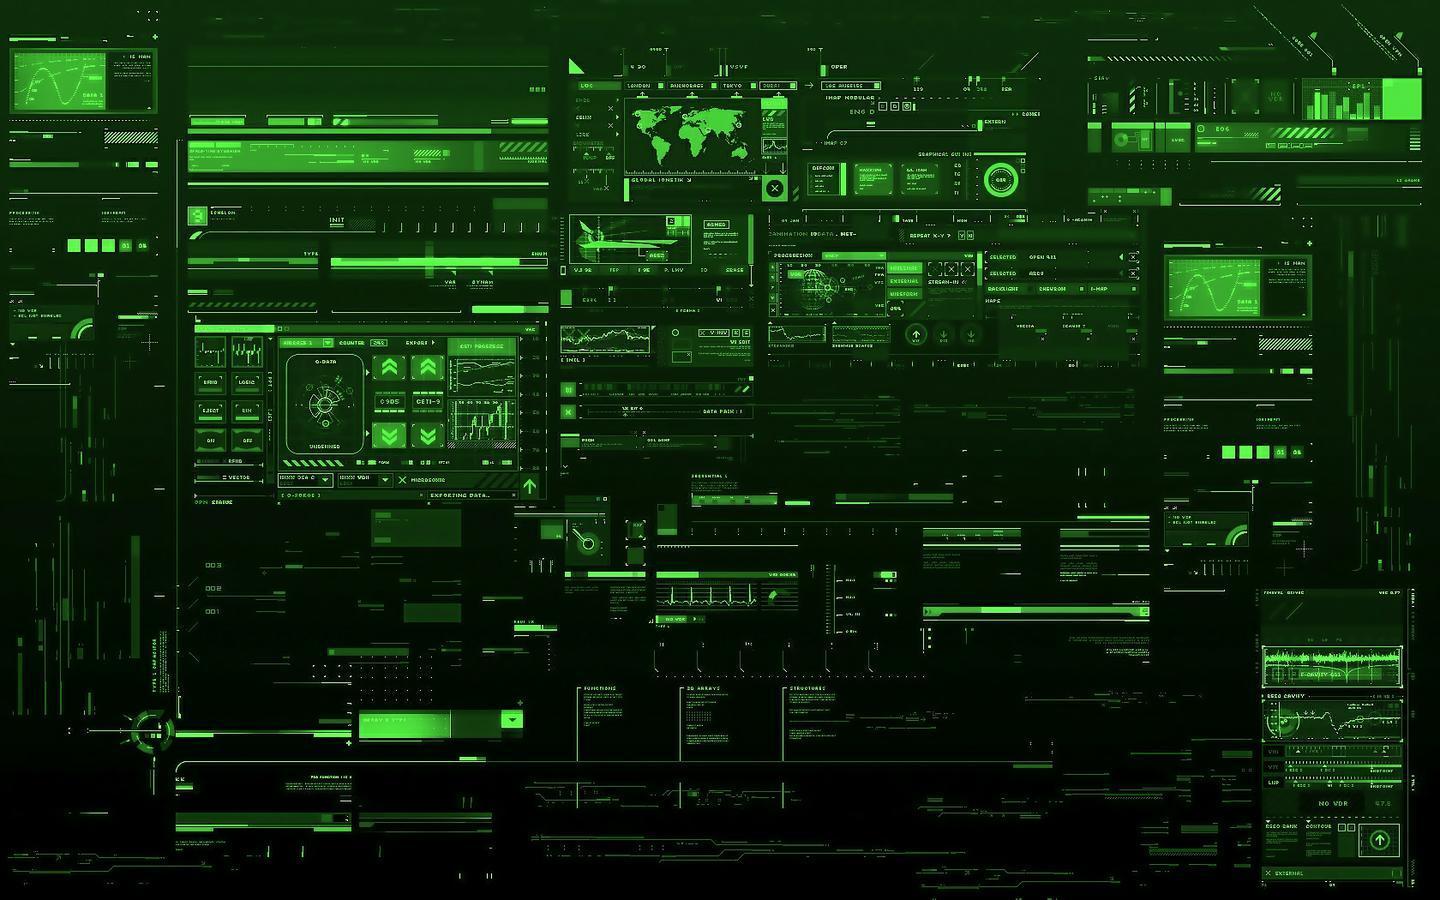 3d green technology wallpaper